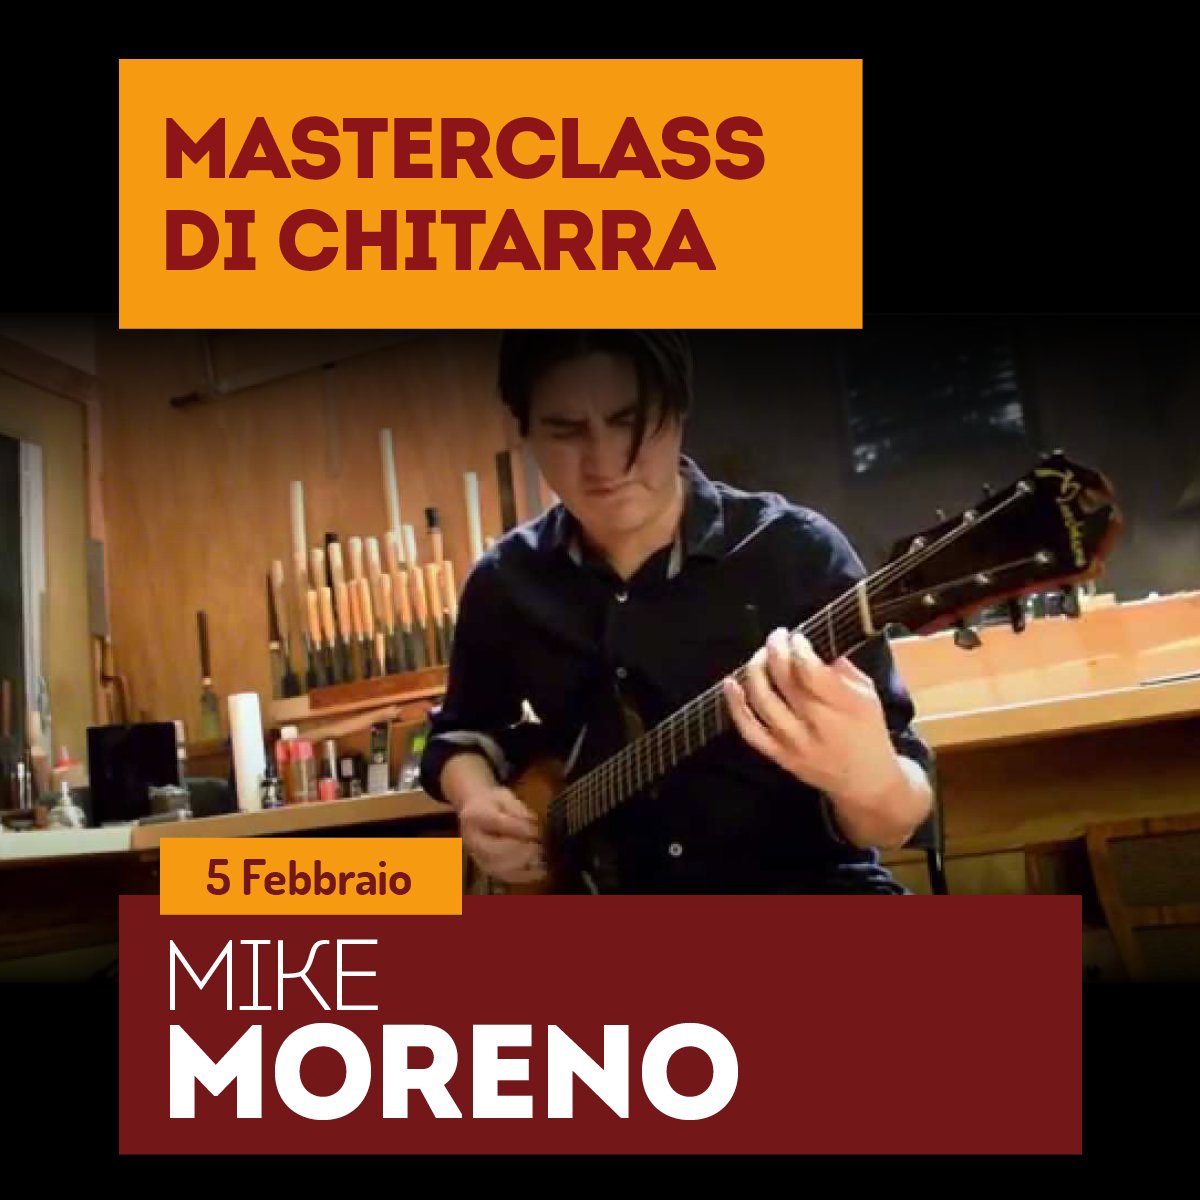 Image of MIKE MORENO Masterclass di chitarra